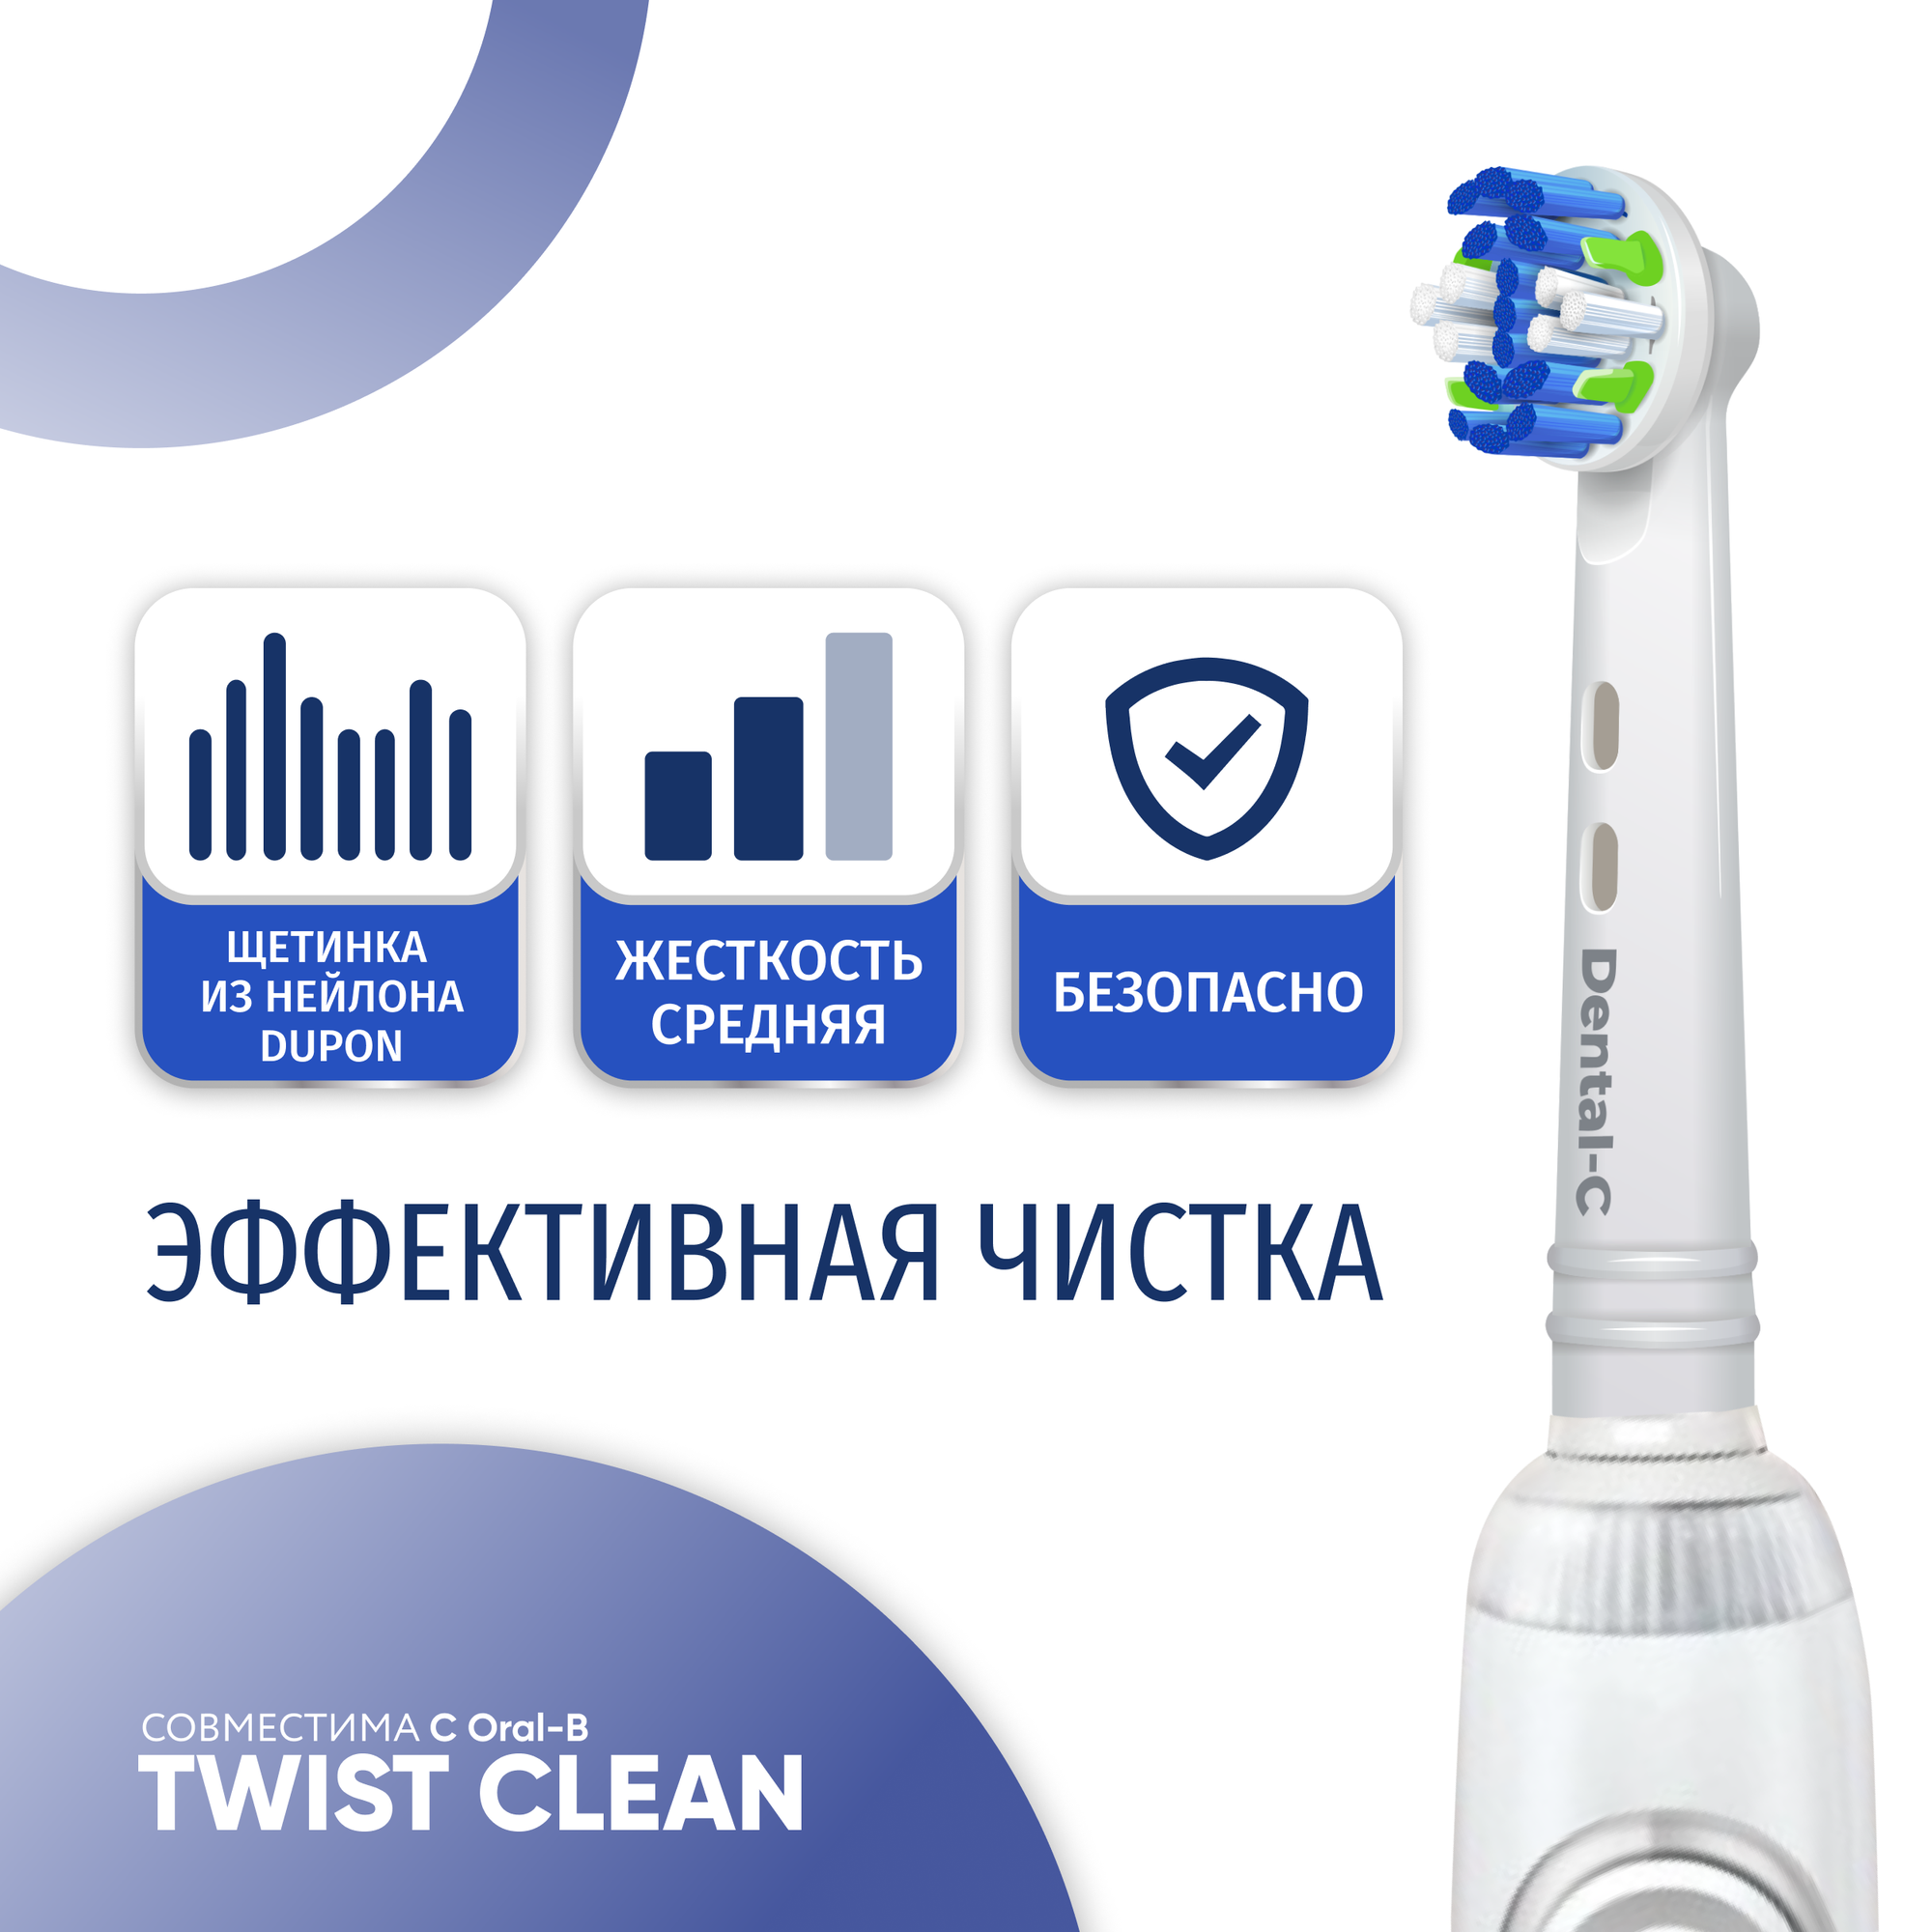 Насадки ULTRA TWIST CLEAN для электрической зубной щетки совместимые с Oral-B Braun 4 шт